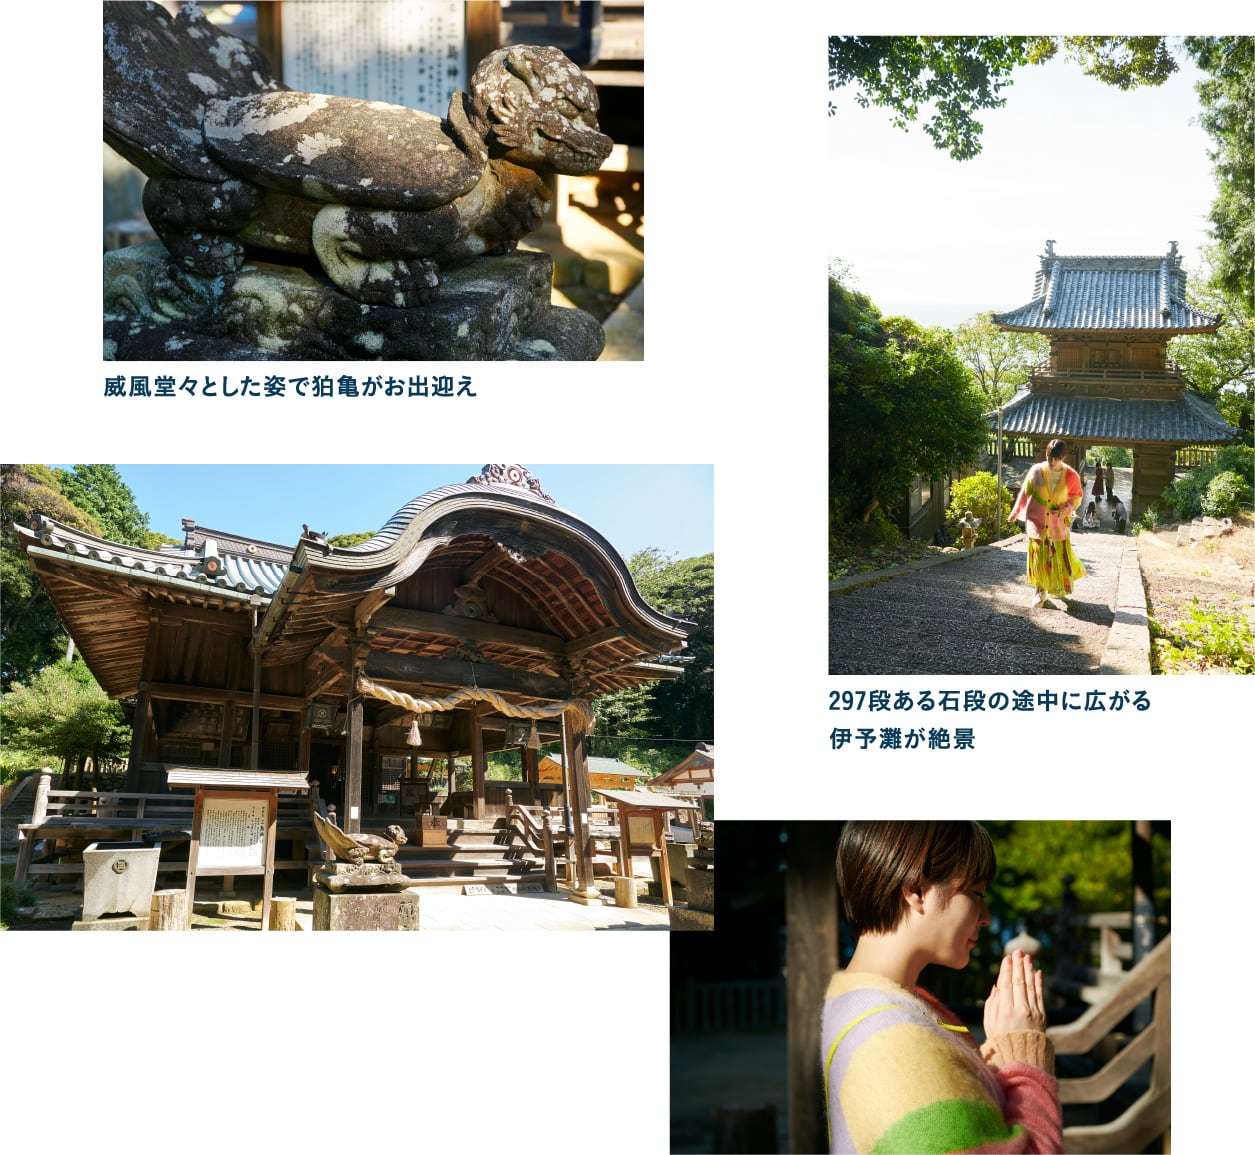 「狛亀」が出迎えてくれる三島神社で旅の安全祈願